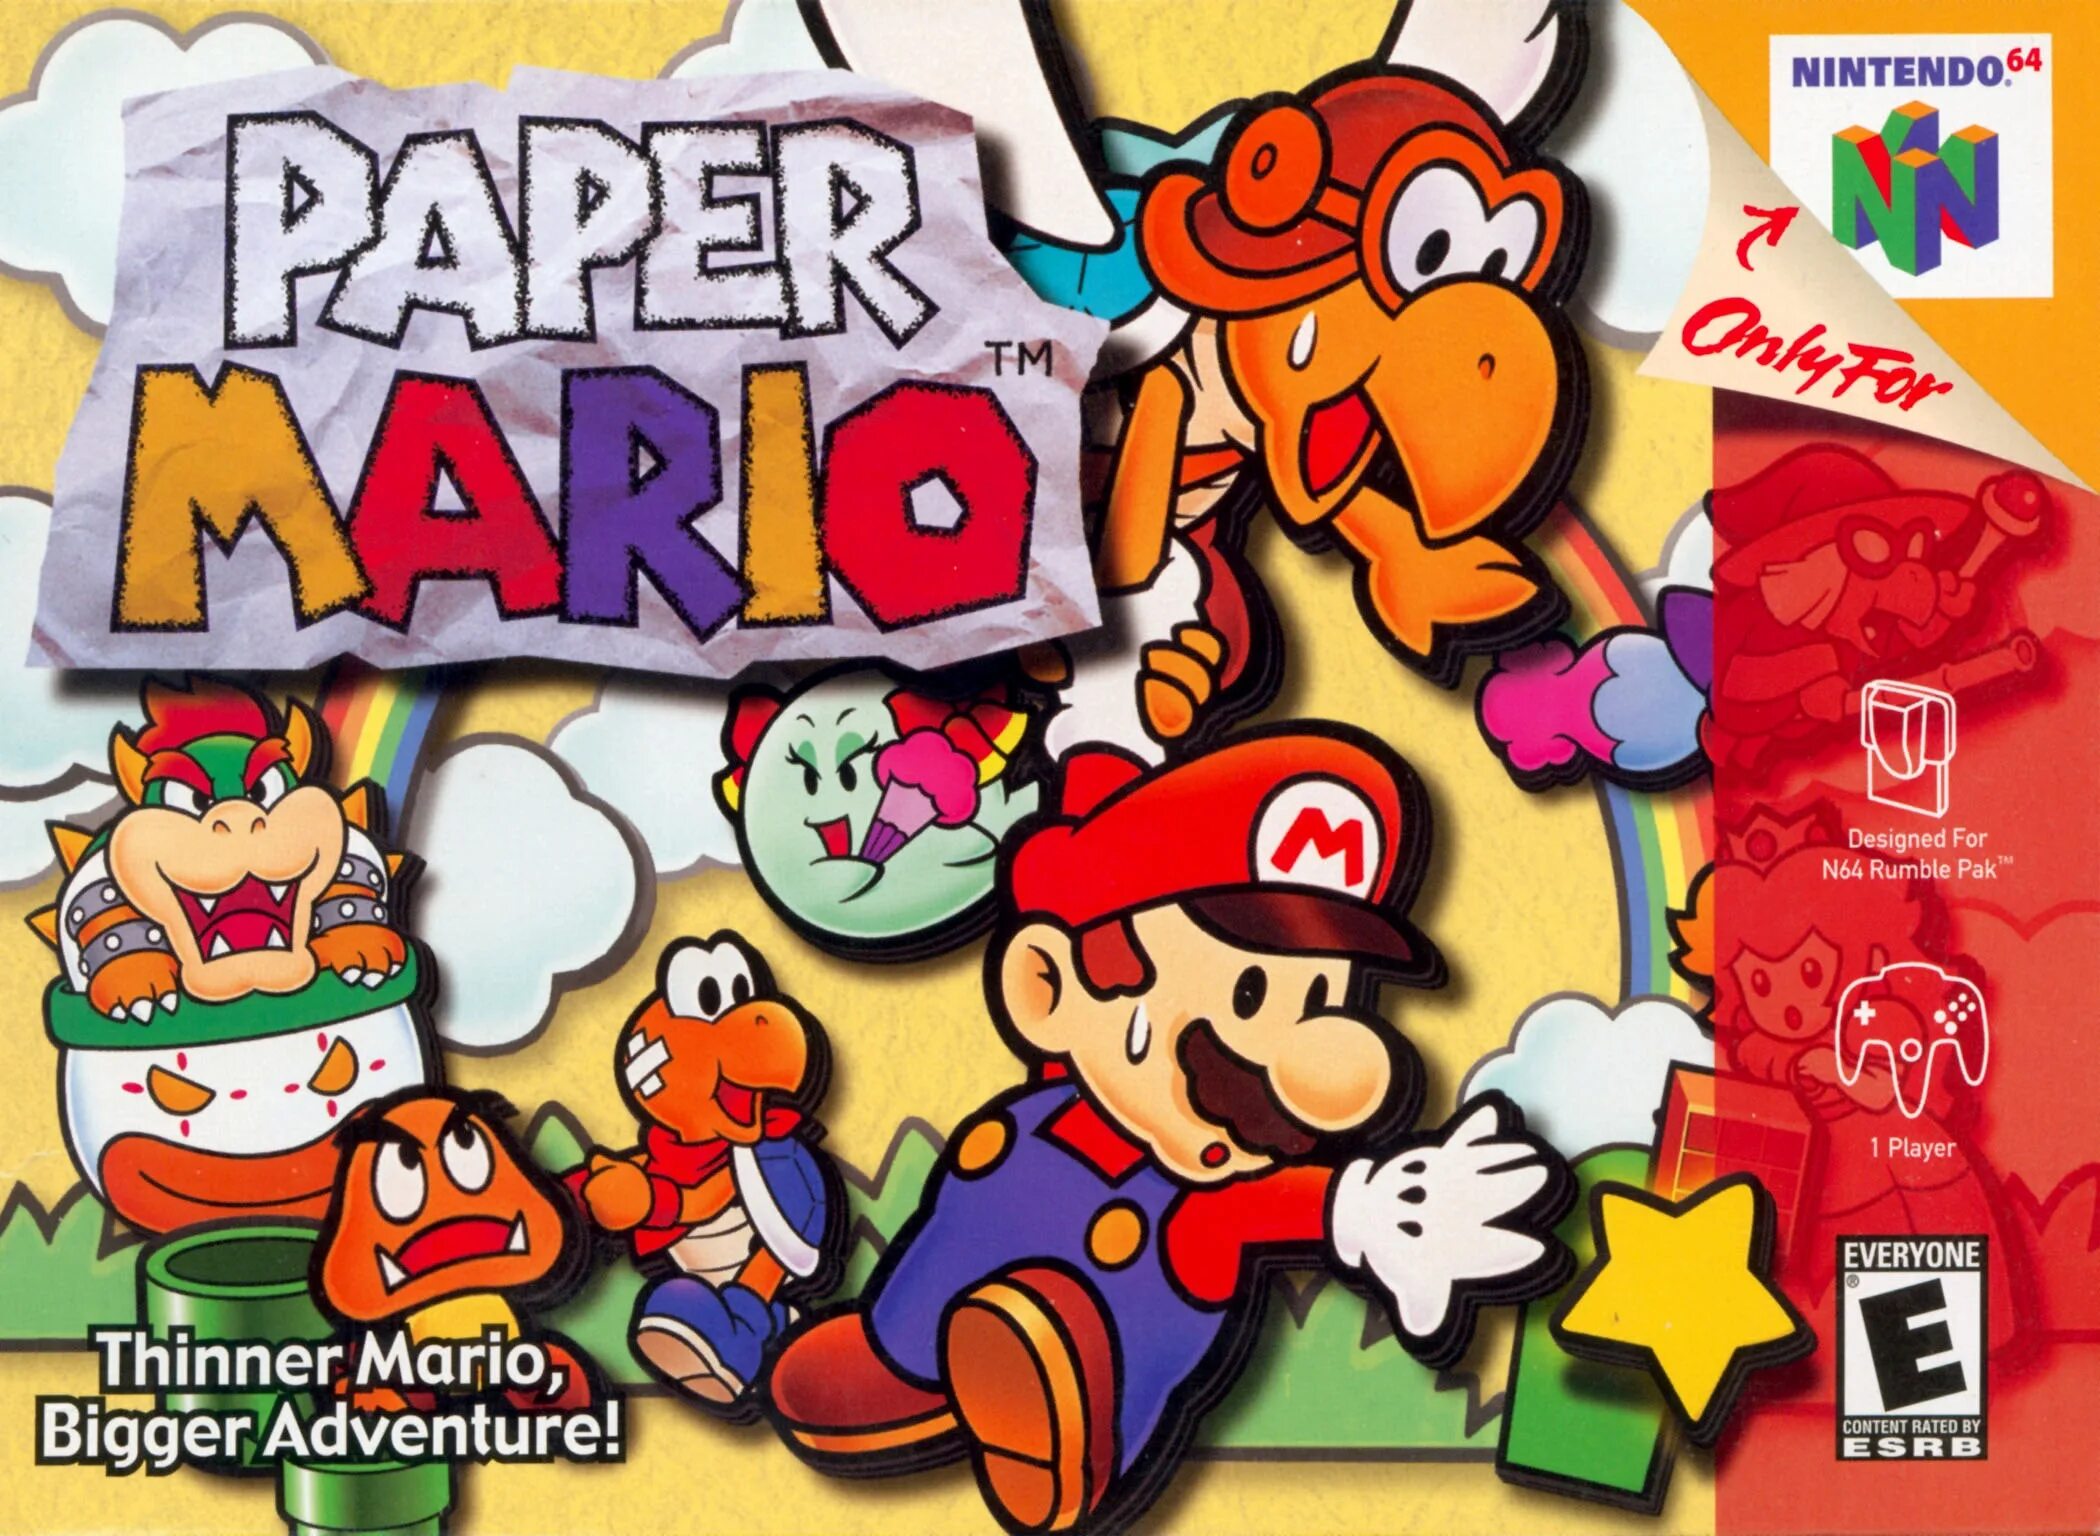 Nintendo 64 mario. Paper Mario n64. Paper Mario Nintendo 64. Super Mario 64 Nintendo 64 обложка. Paper Mario n64 игра русский.